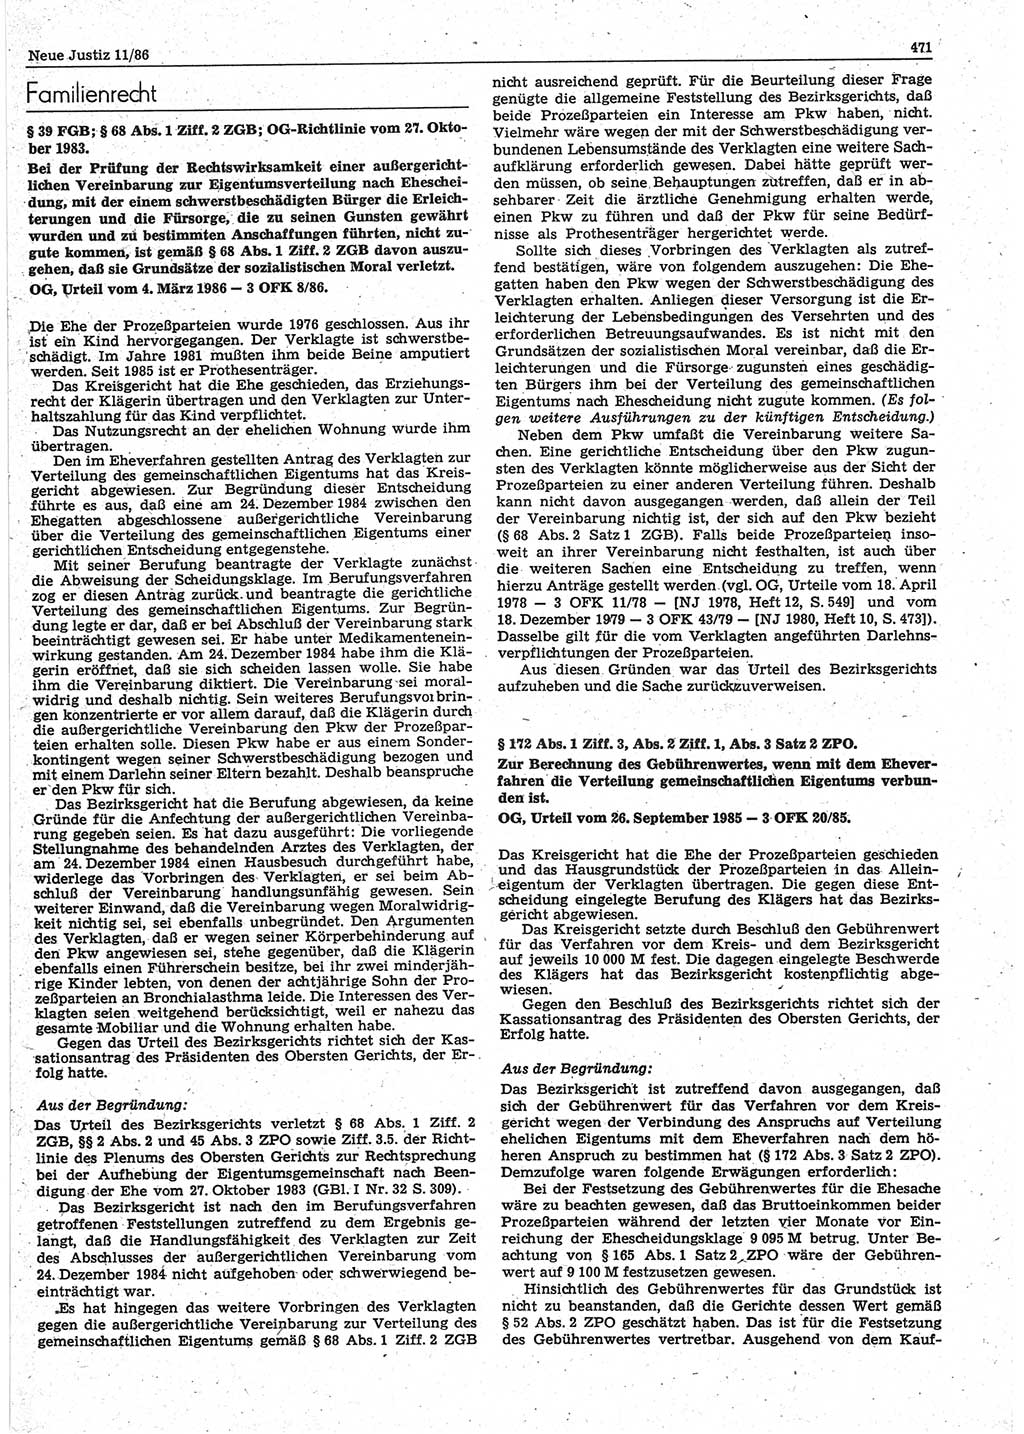 Neue Justiz (NJ), Zeitschrift für sozialistisches Recht und Gesetzlichkeit [Deutsche Demokratische Republik (DDR)], 40. Jahrgang 1986, Seite 471 (NJ DDR 1986, S. 471)